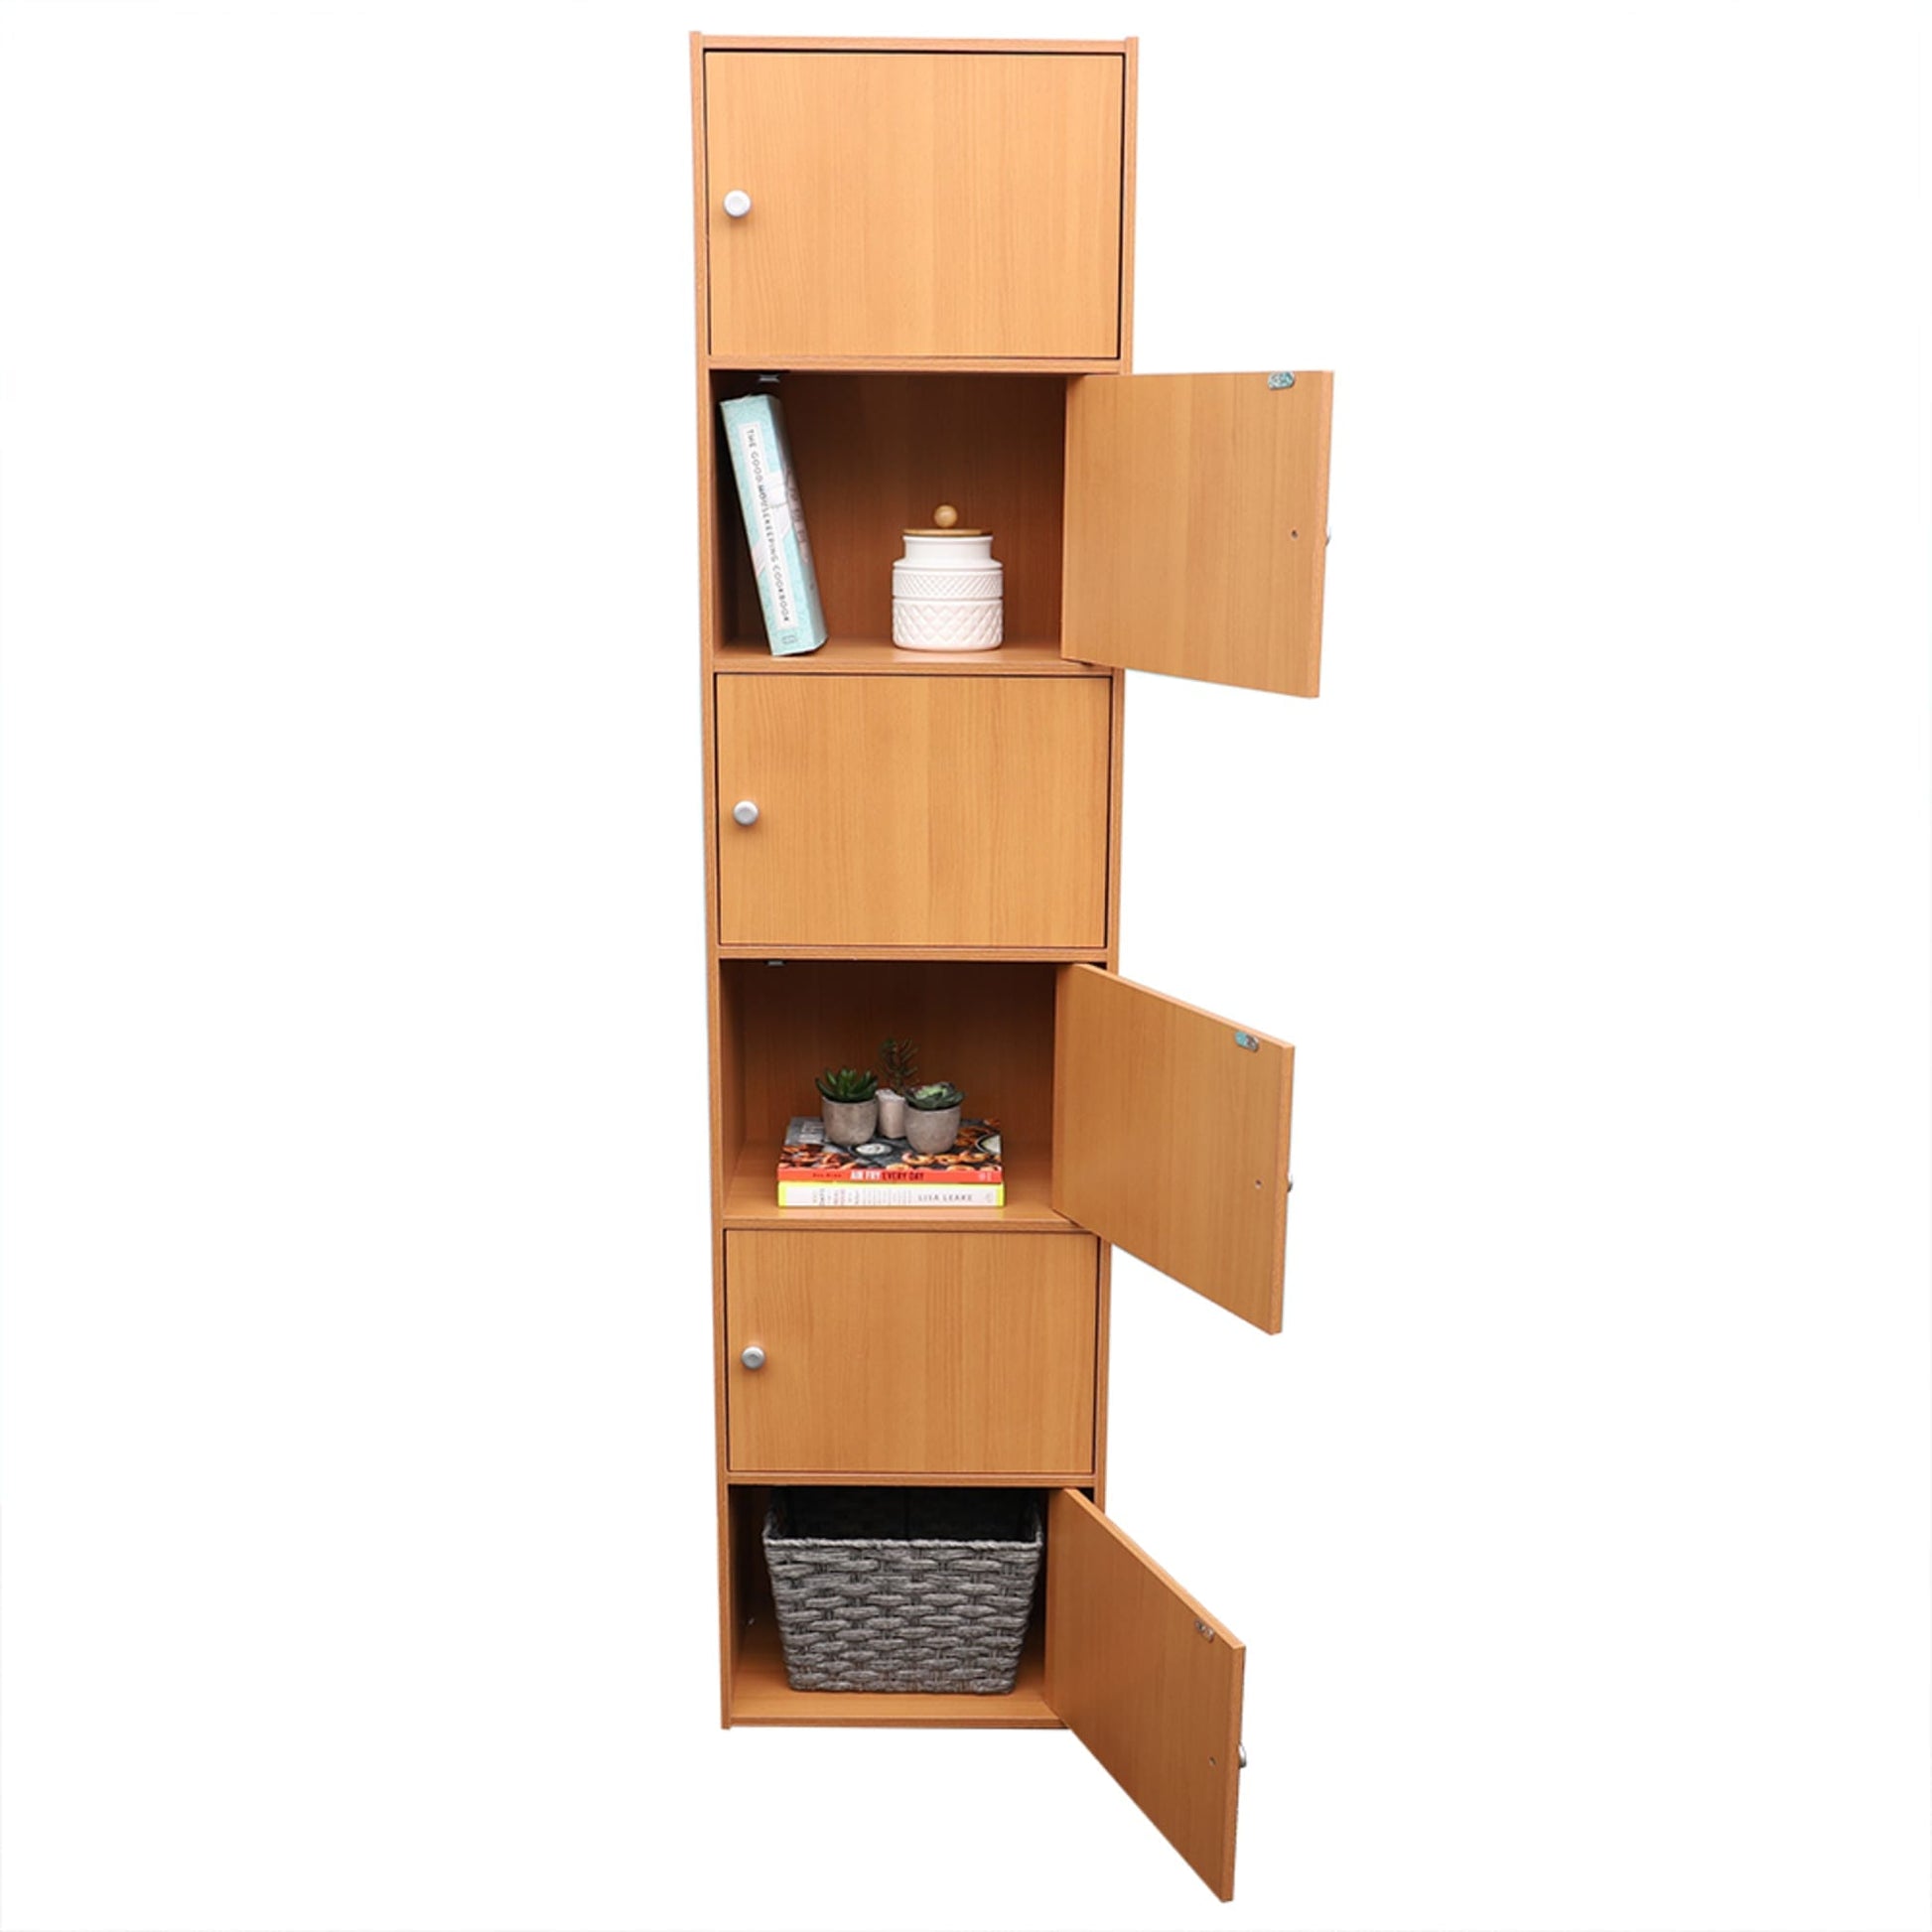 Home Basics 6 Open Cube Organizing Wood Storage Shelf, Grey